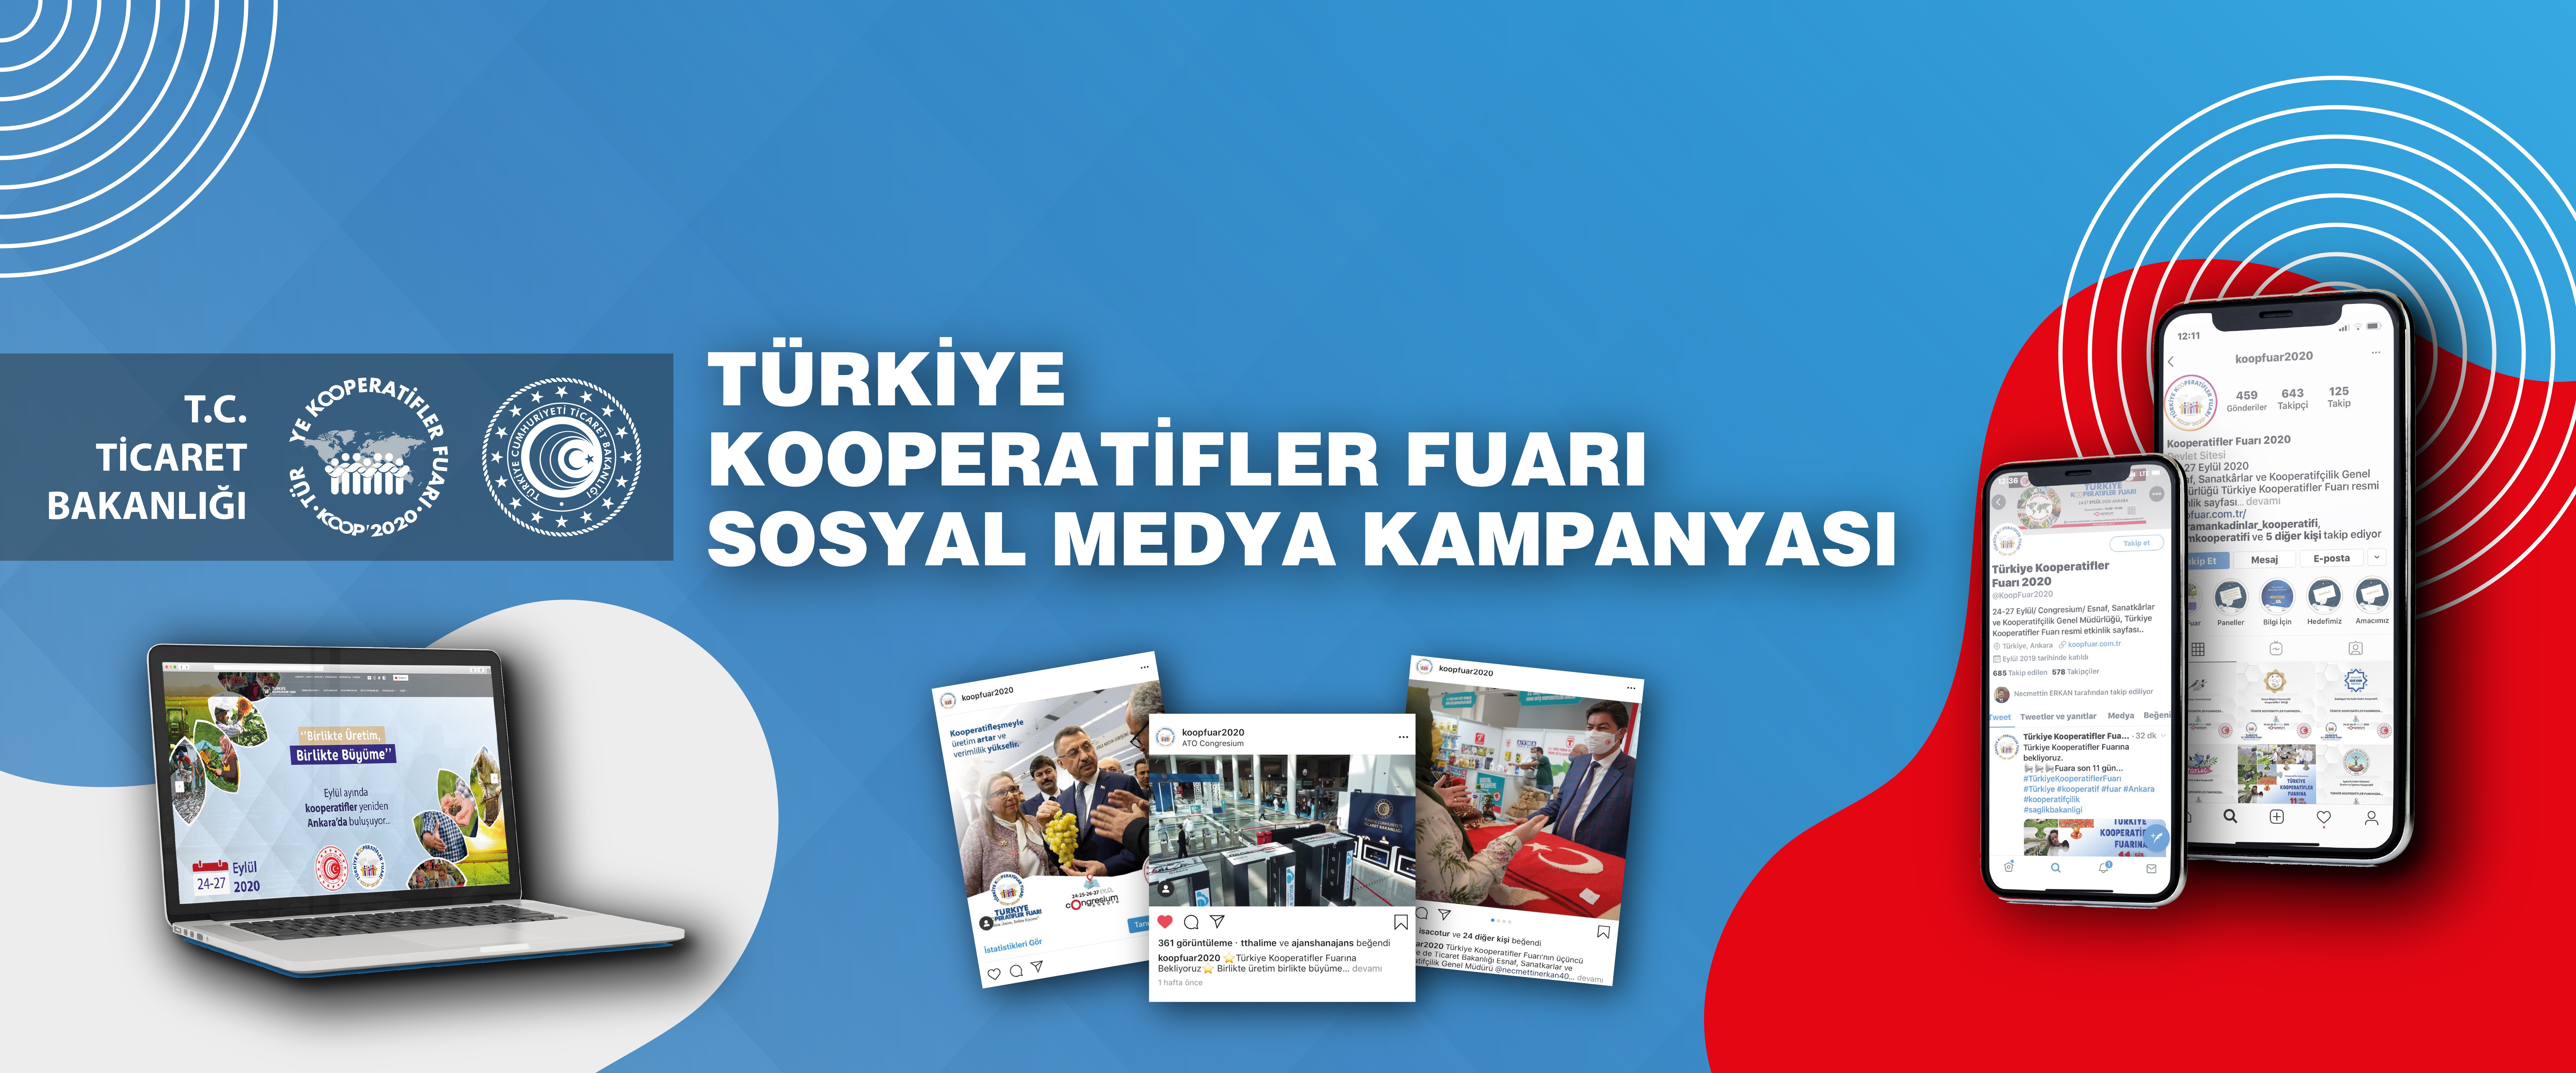 Türkiye Kooperatifler Fuarı Sosyal Medya Kampanyası